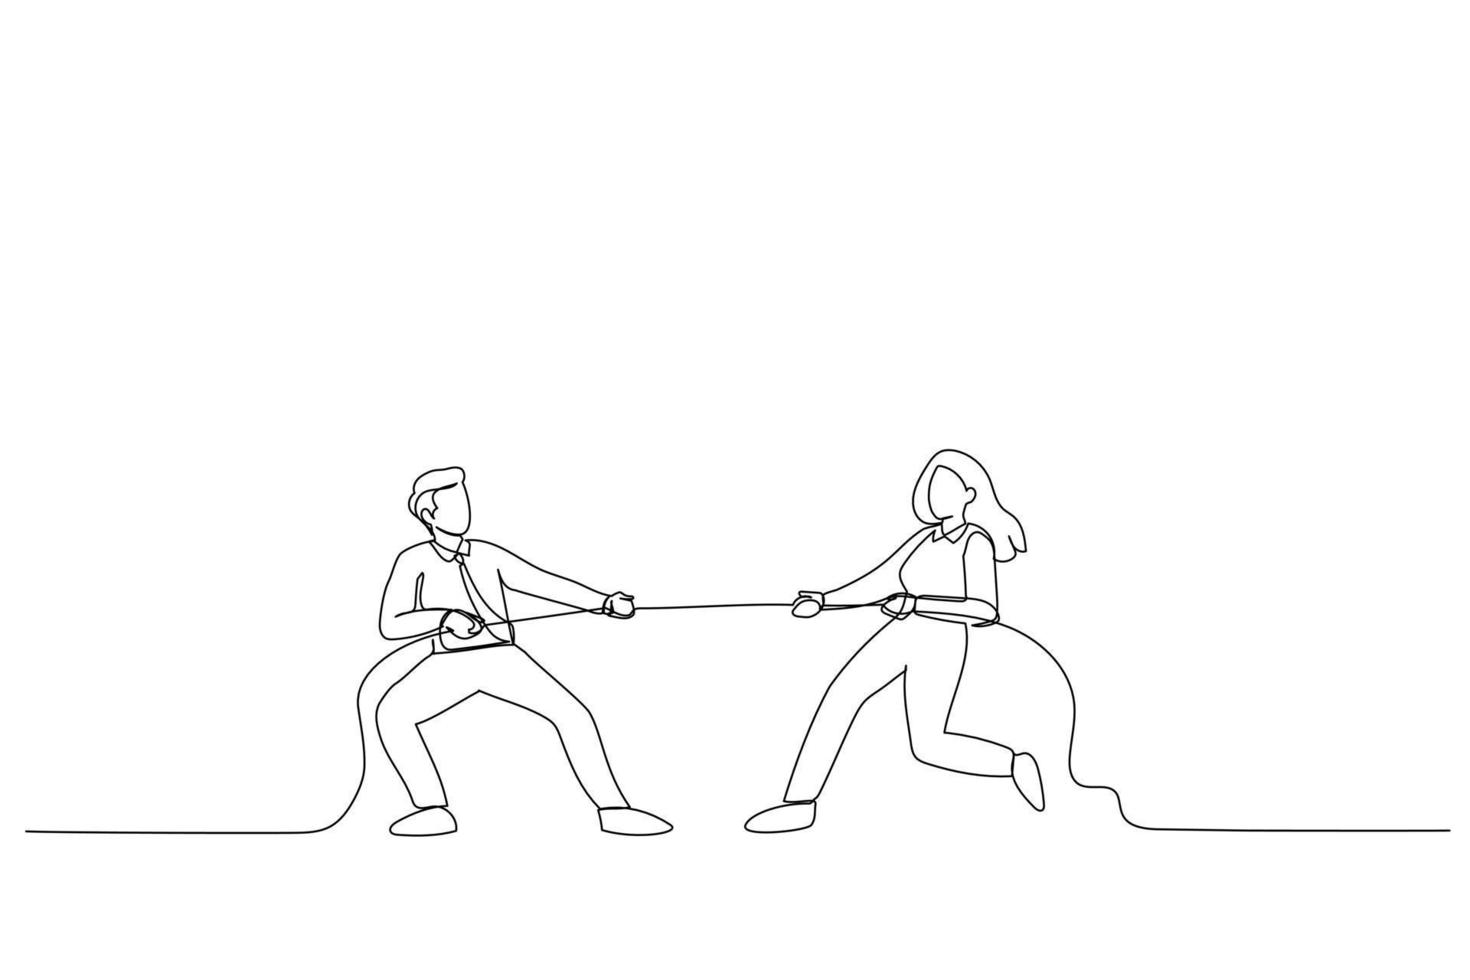 desenho de cabo de guerra. homem e mulher estão puxando corda. metáfora competitiva de negócios. estilo de arte de linha única vetor